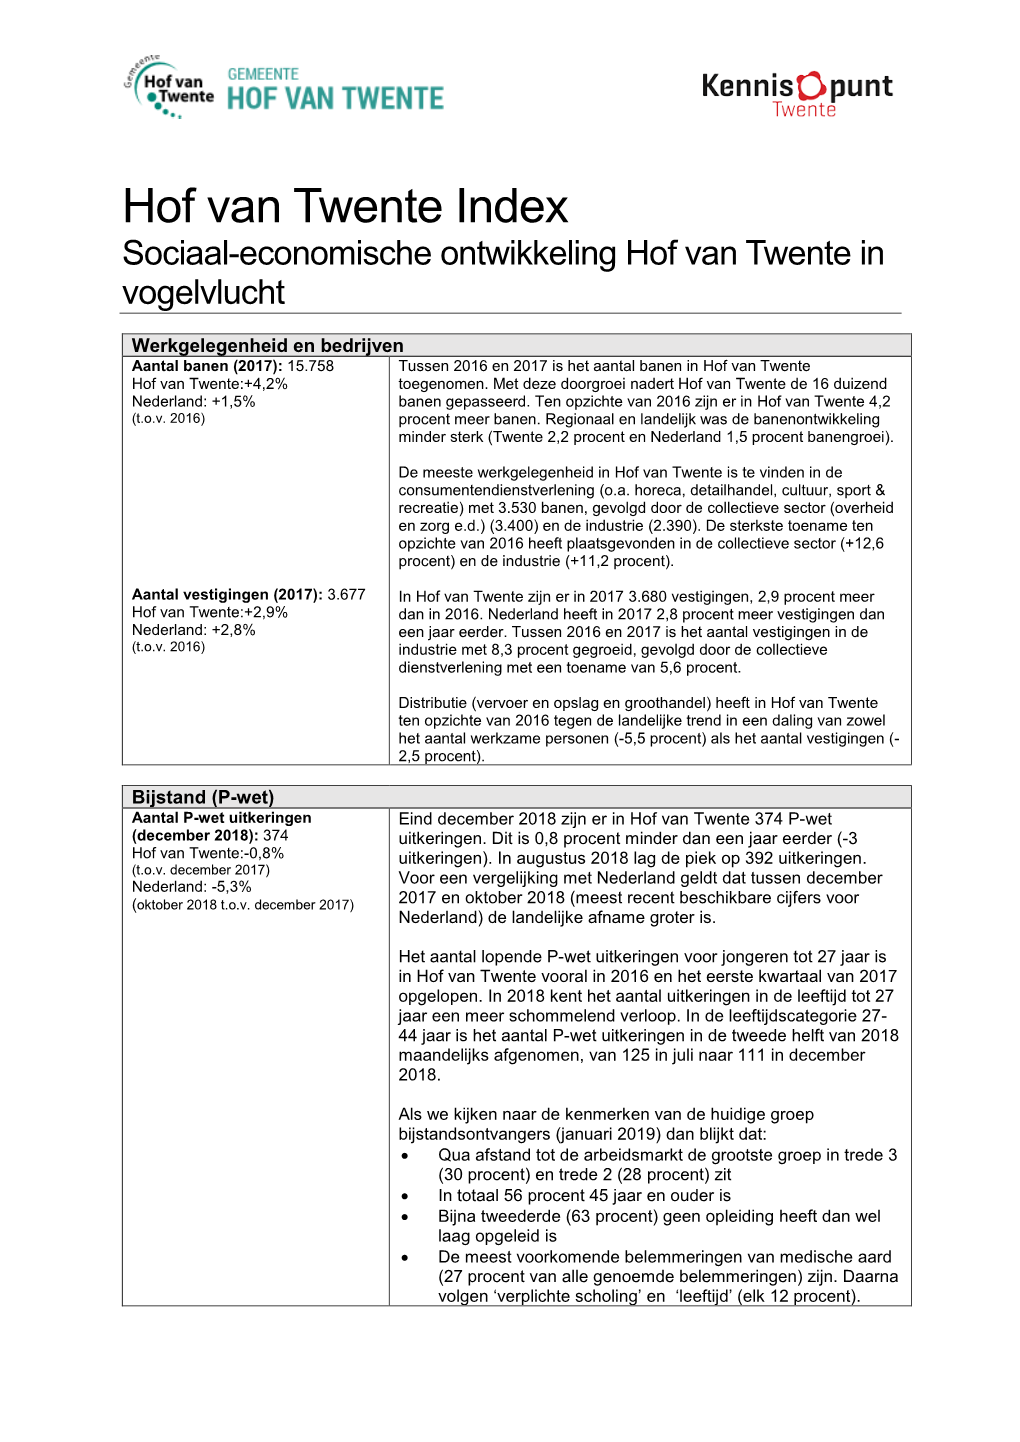 Hof Van Twente Index Sociaal-Economische Ontwikkeling Hof Van Twente in Vogelvlucht